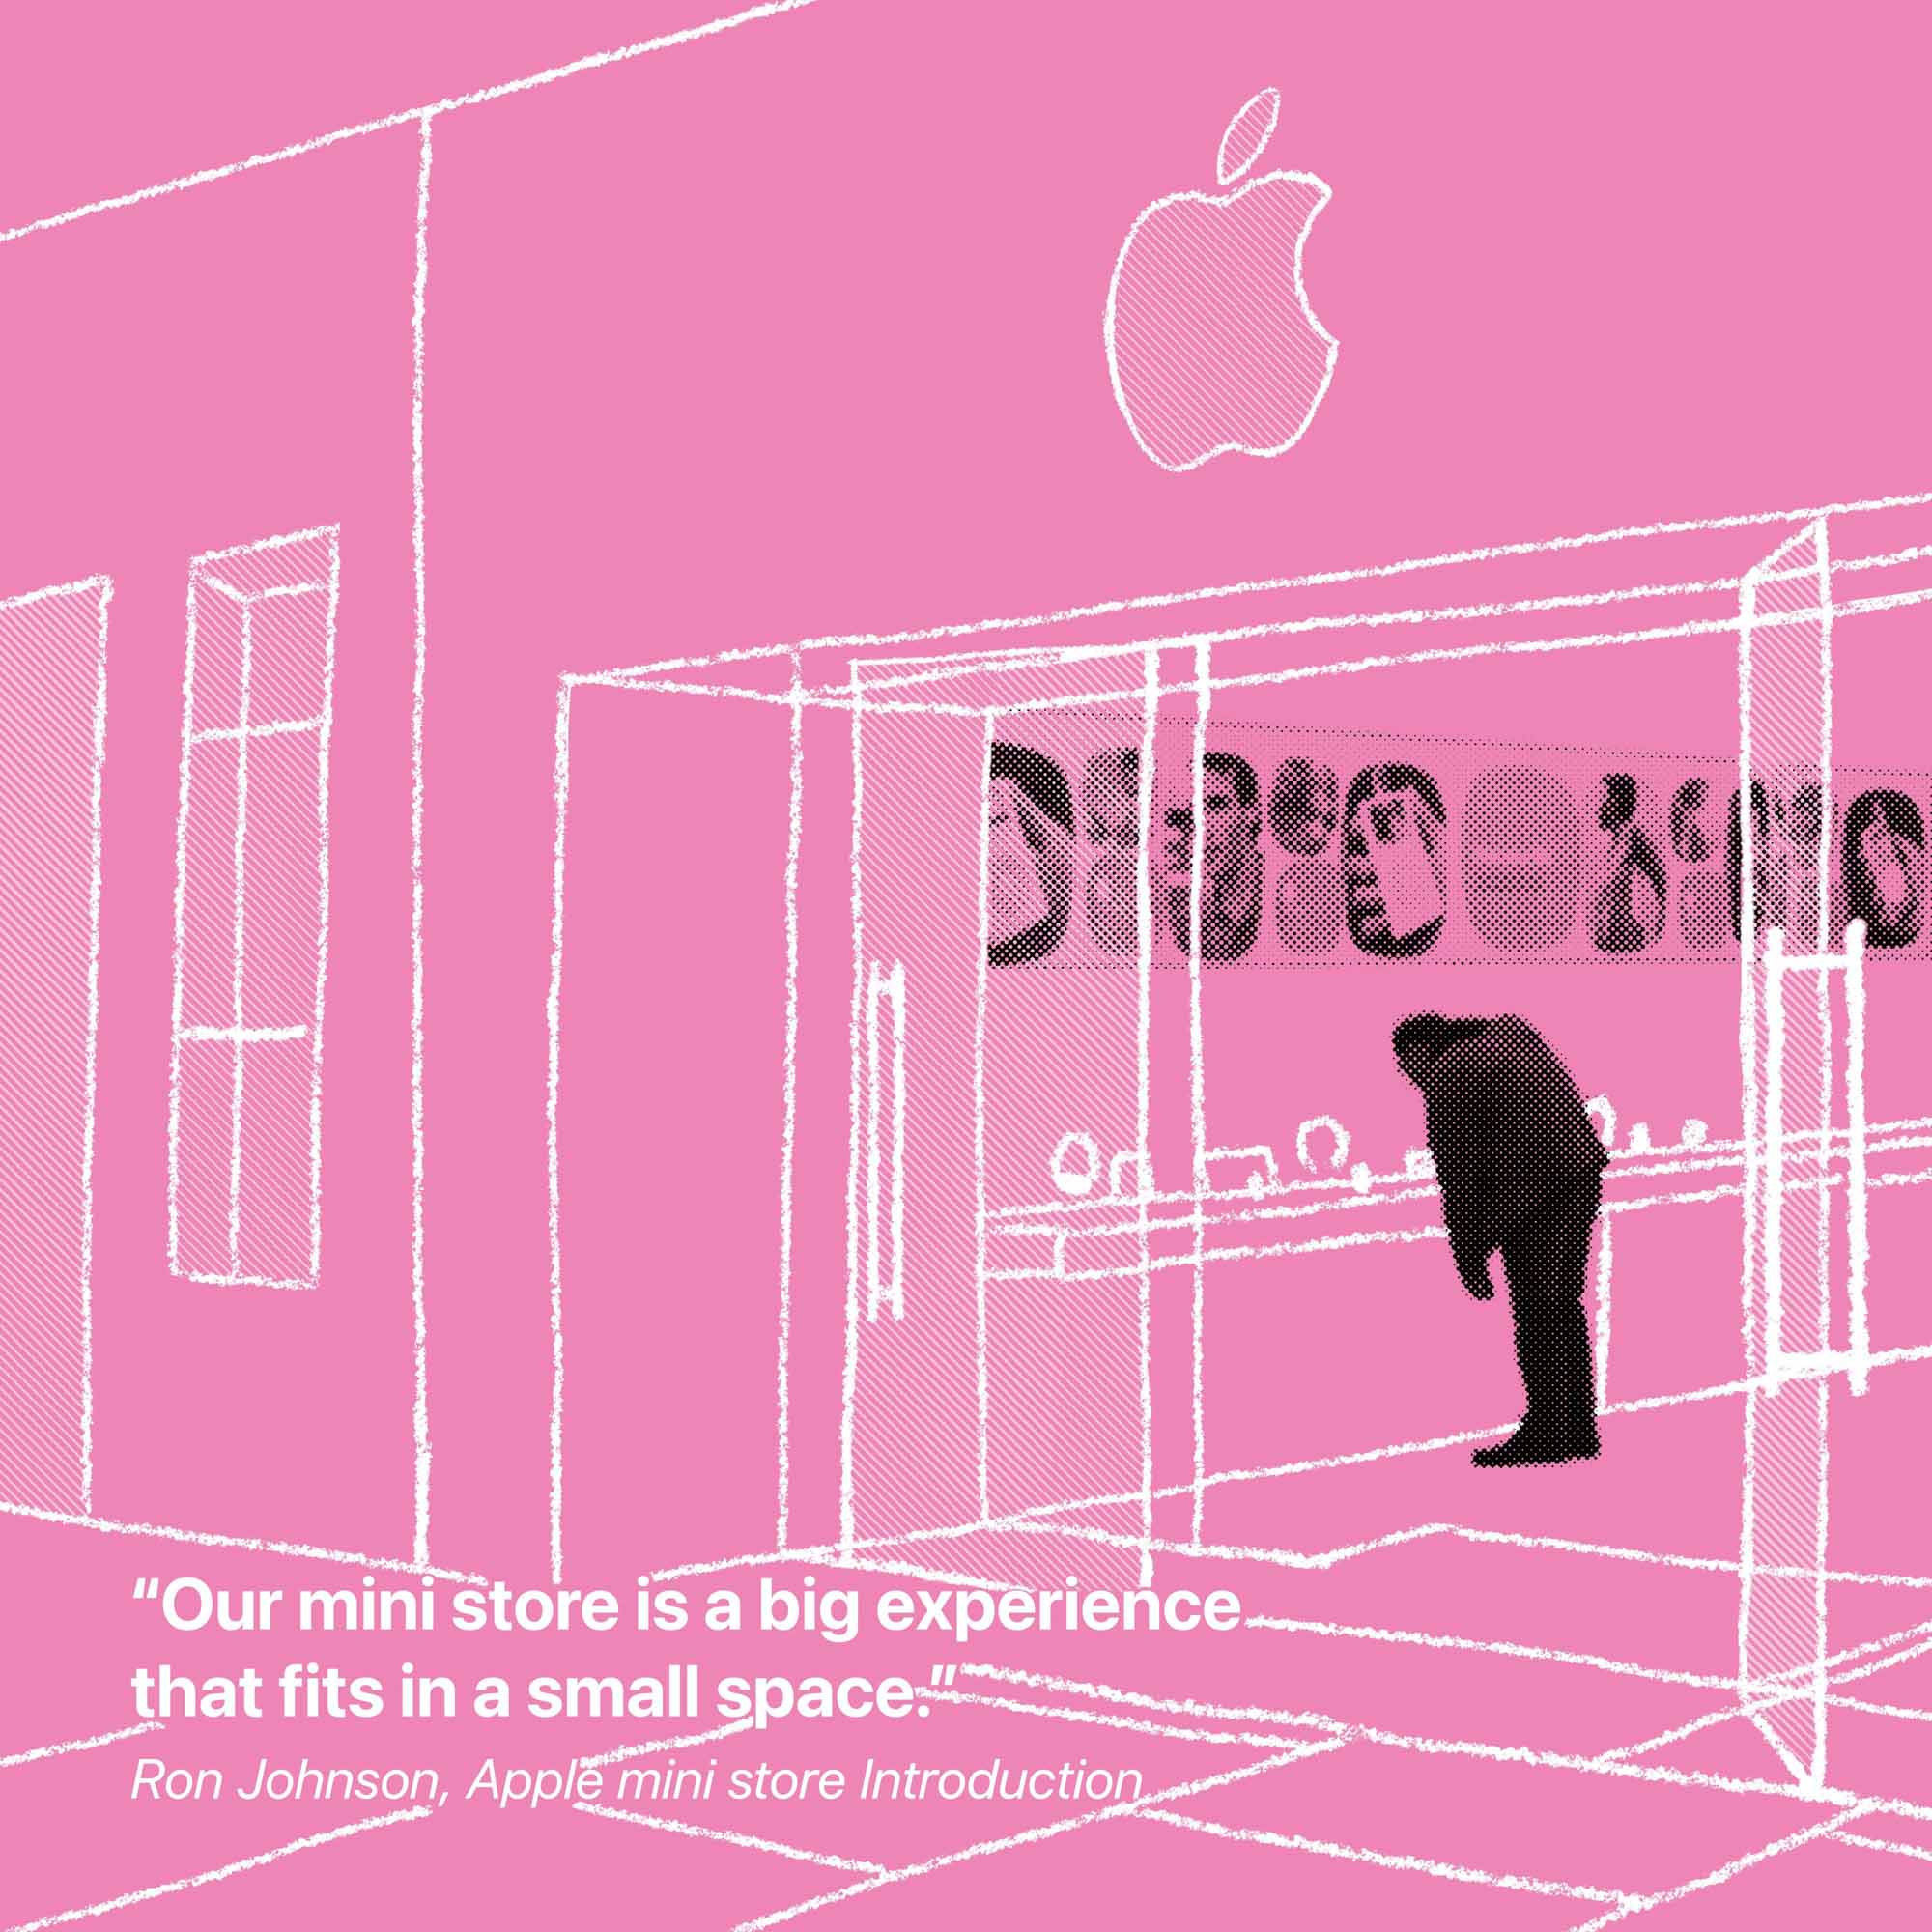 "Наш мини-магазин - это большой опыт, который уместится на небольшом пространстве."  Рон Джонсон, мини-магазин Apple Введение